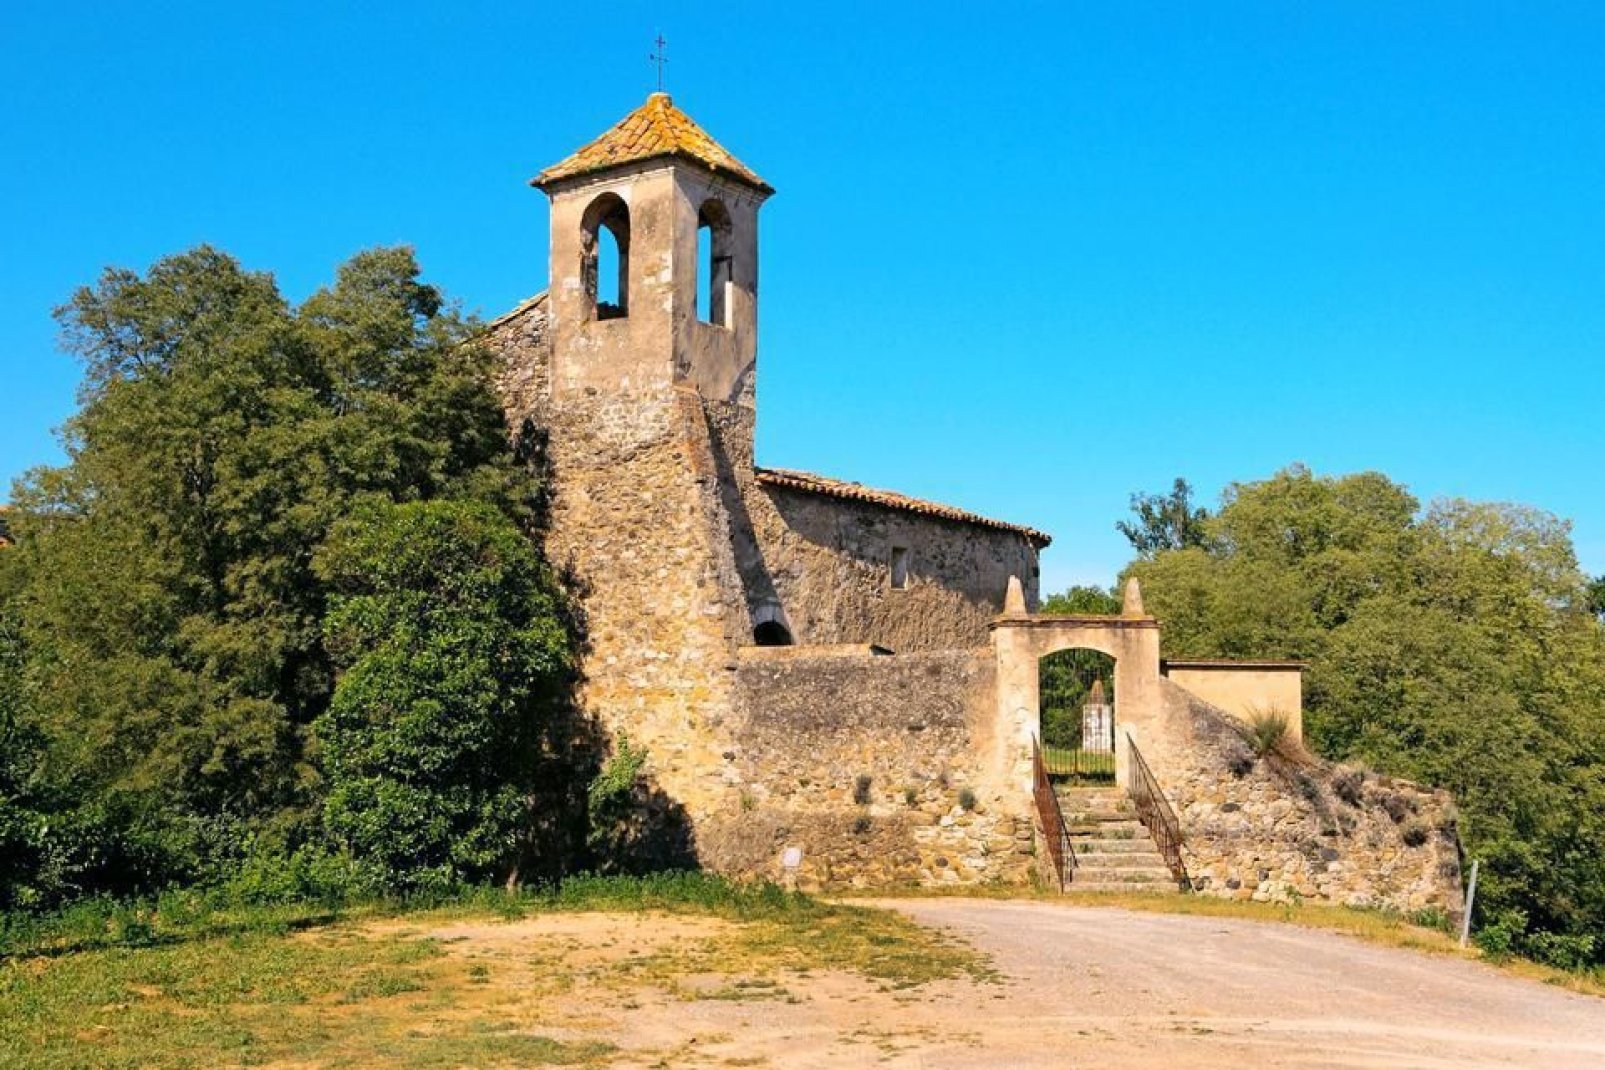 Si scopre il quartiere ebraico, l'abbazia di Sant Pere consacrata nel 1003 da Taillefer, o ancora la chiesa parrocchiale di San Vicente e le rovine di Santa Maria di Besalú.